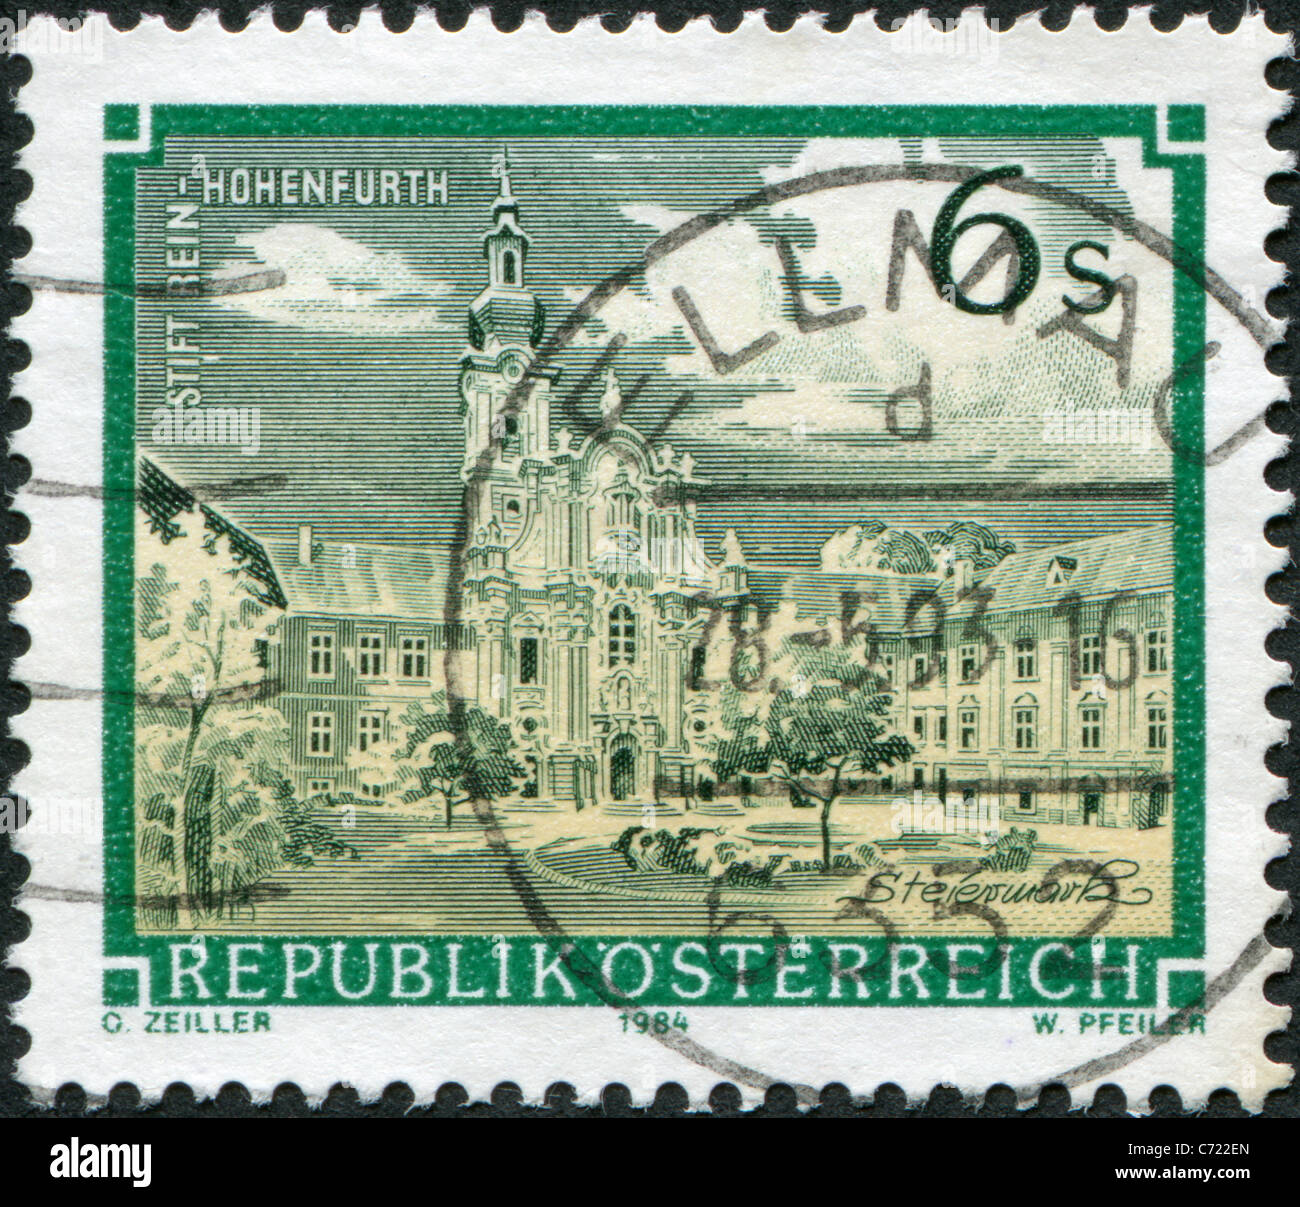 Autriche - 1984 : timbre imprimé en Autriche, est montré tout faire Rein-Hohenfurth (Abbaye) Banque D'Images